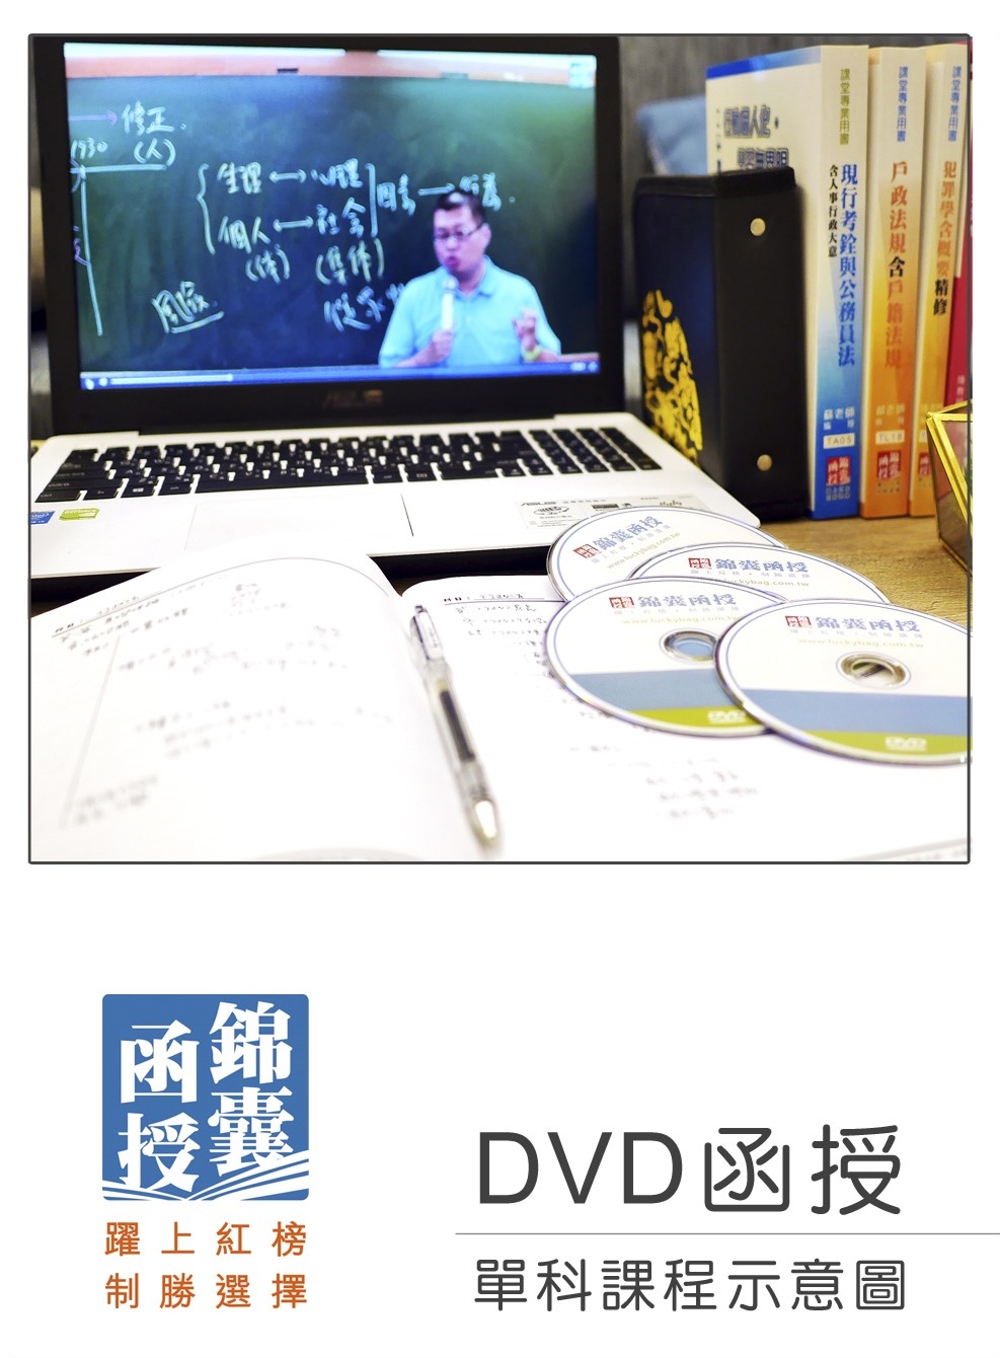 【DVD函授】計算機概要：單科課程(109版)